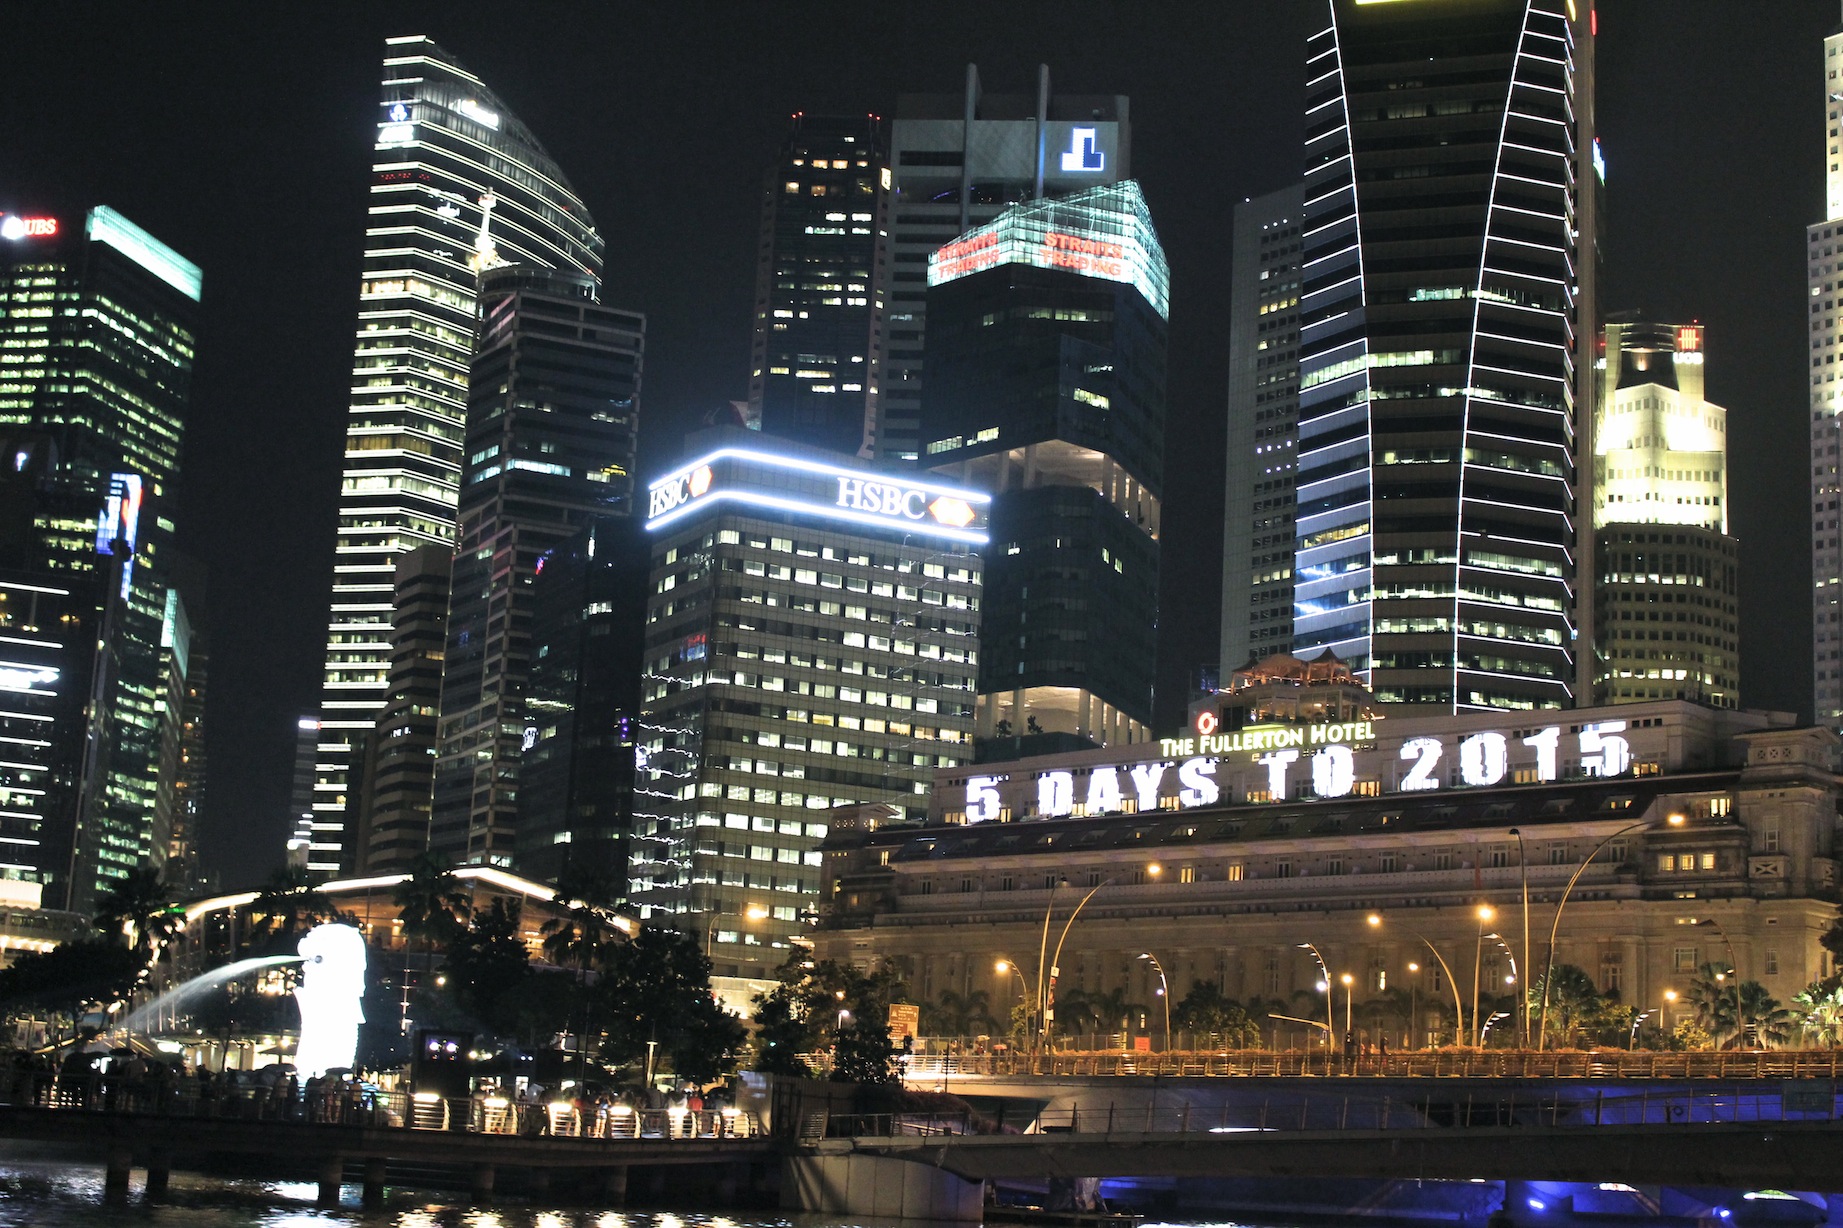 Reasons To Countdown at Marina Bay Singapore 2015 - Alvinology